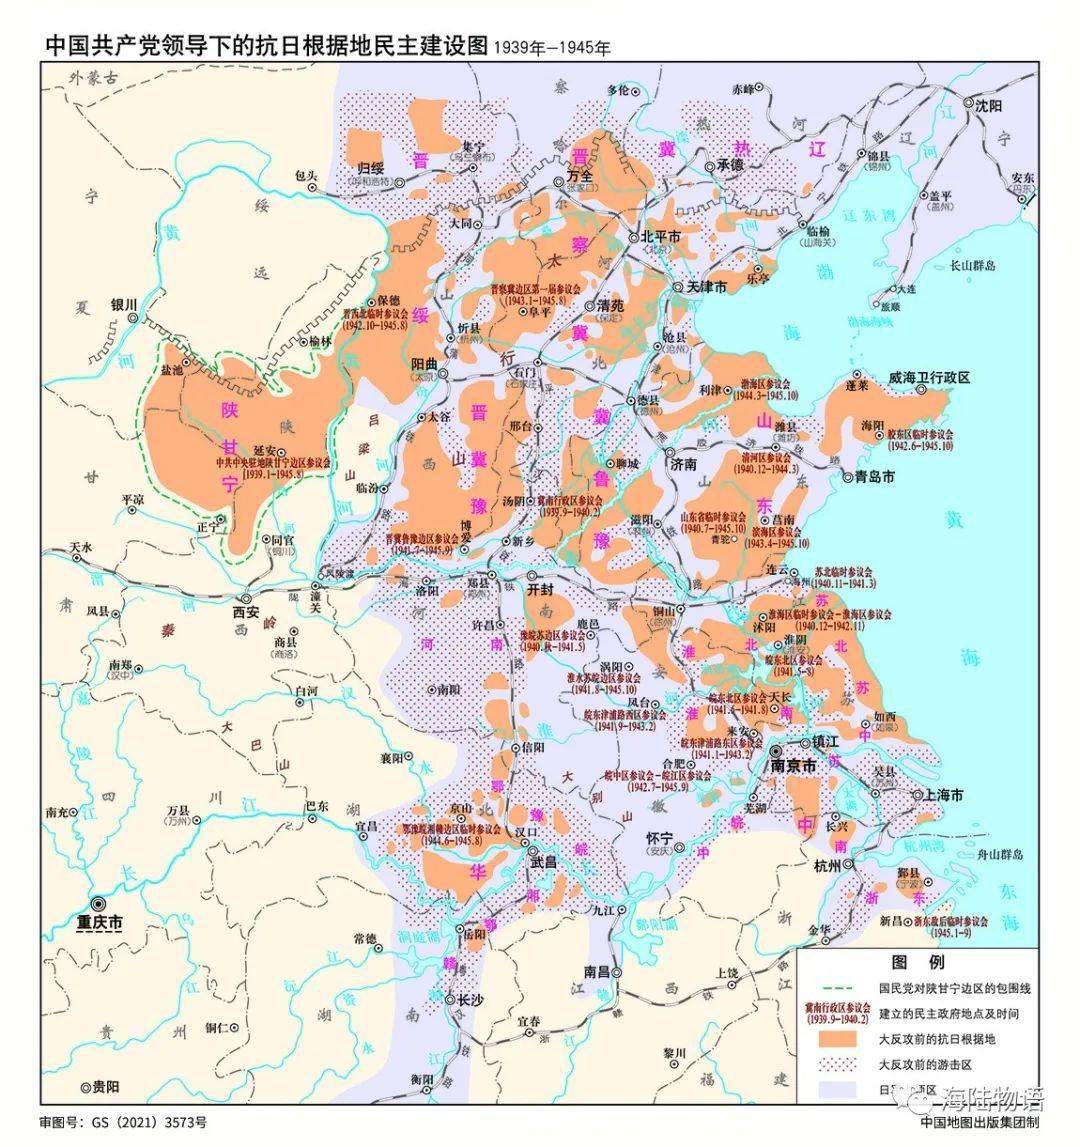 历史| 红色地图:中国共产党领导下的抗日根据地民主建设图